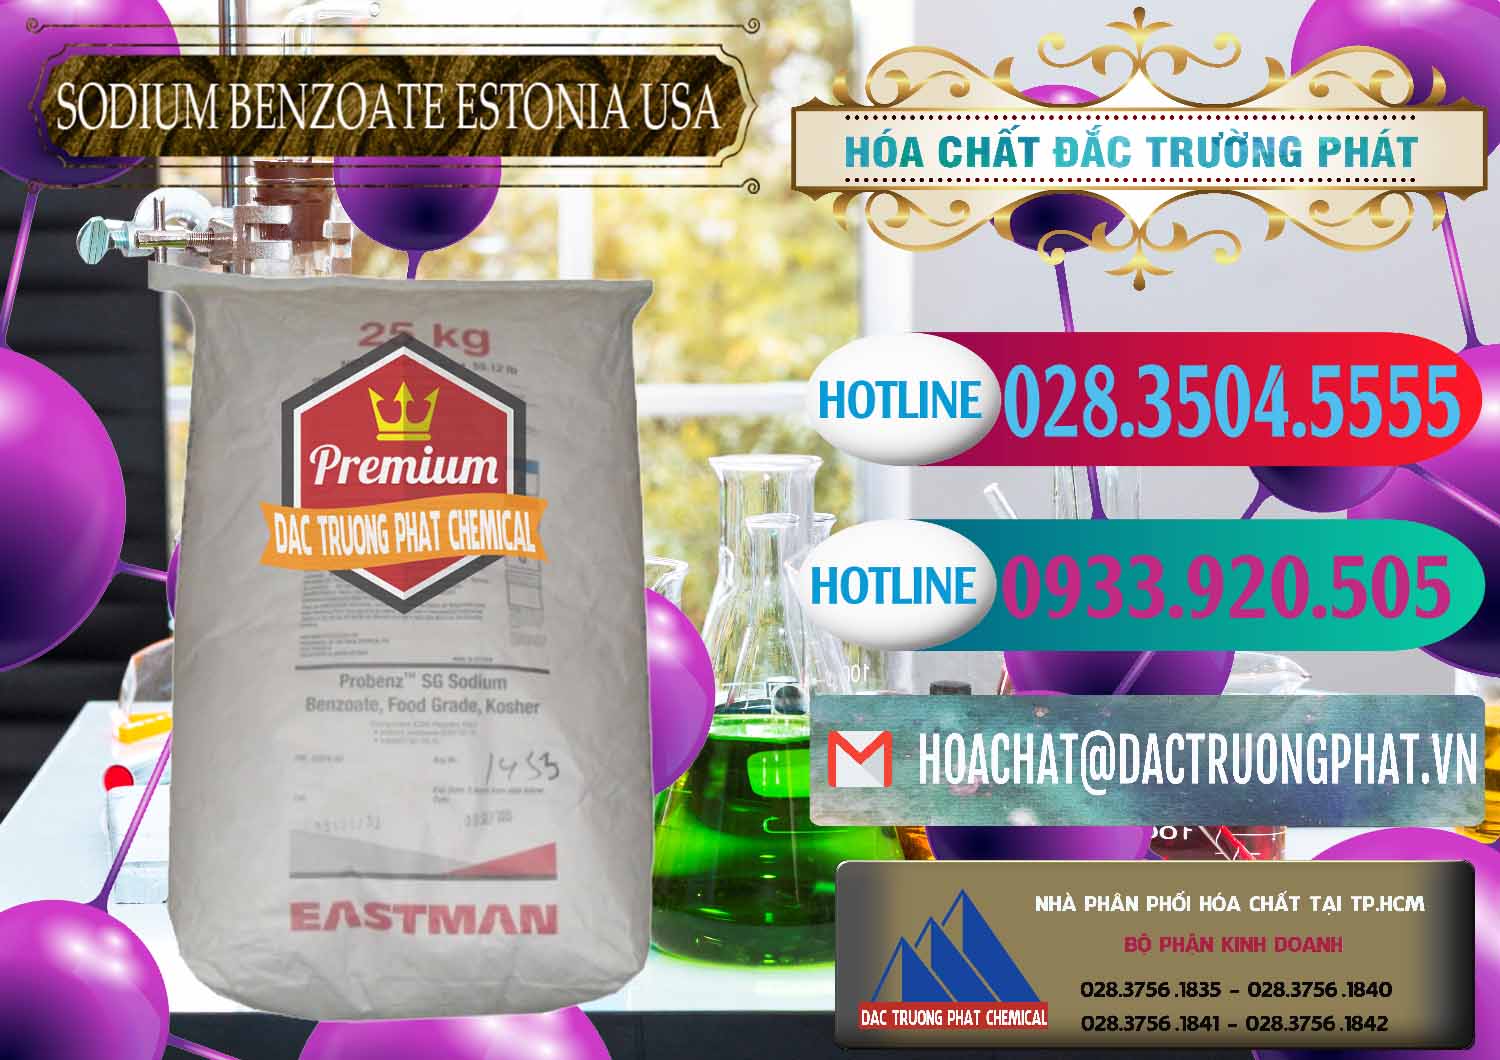 Nơi chuyên cung cấp _ bán Sodium Benzoate - Mốc Bột Estonia Mỹ USA - 0468 - Cty kinh doanh _ cung cấp hóa chất tại TP.HCM - truongphat.vn